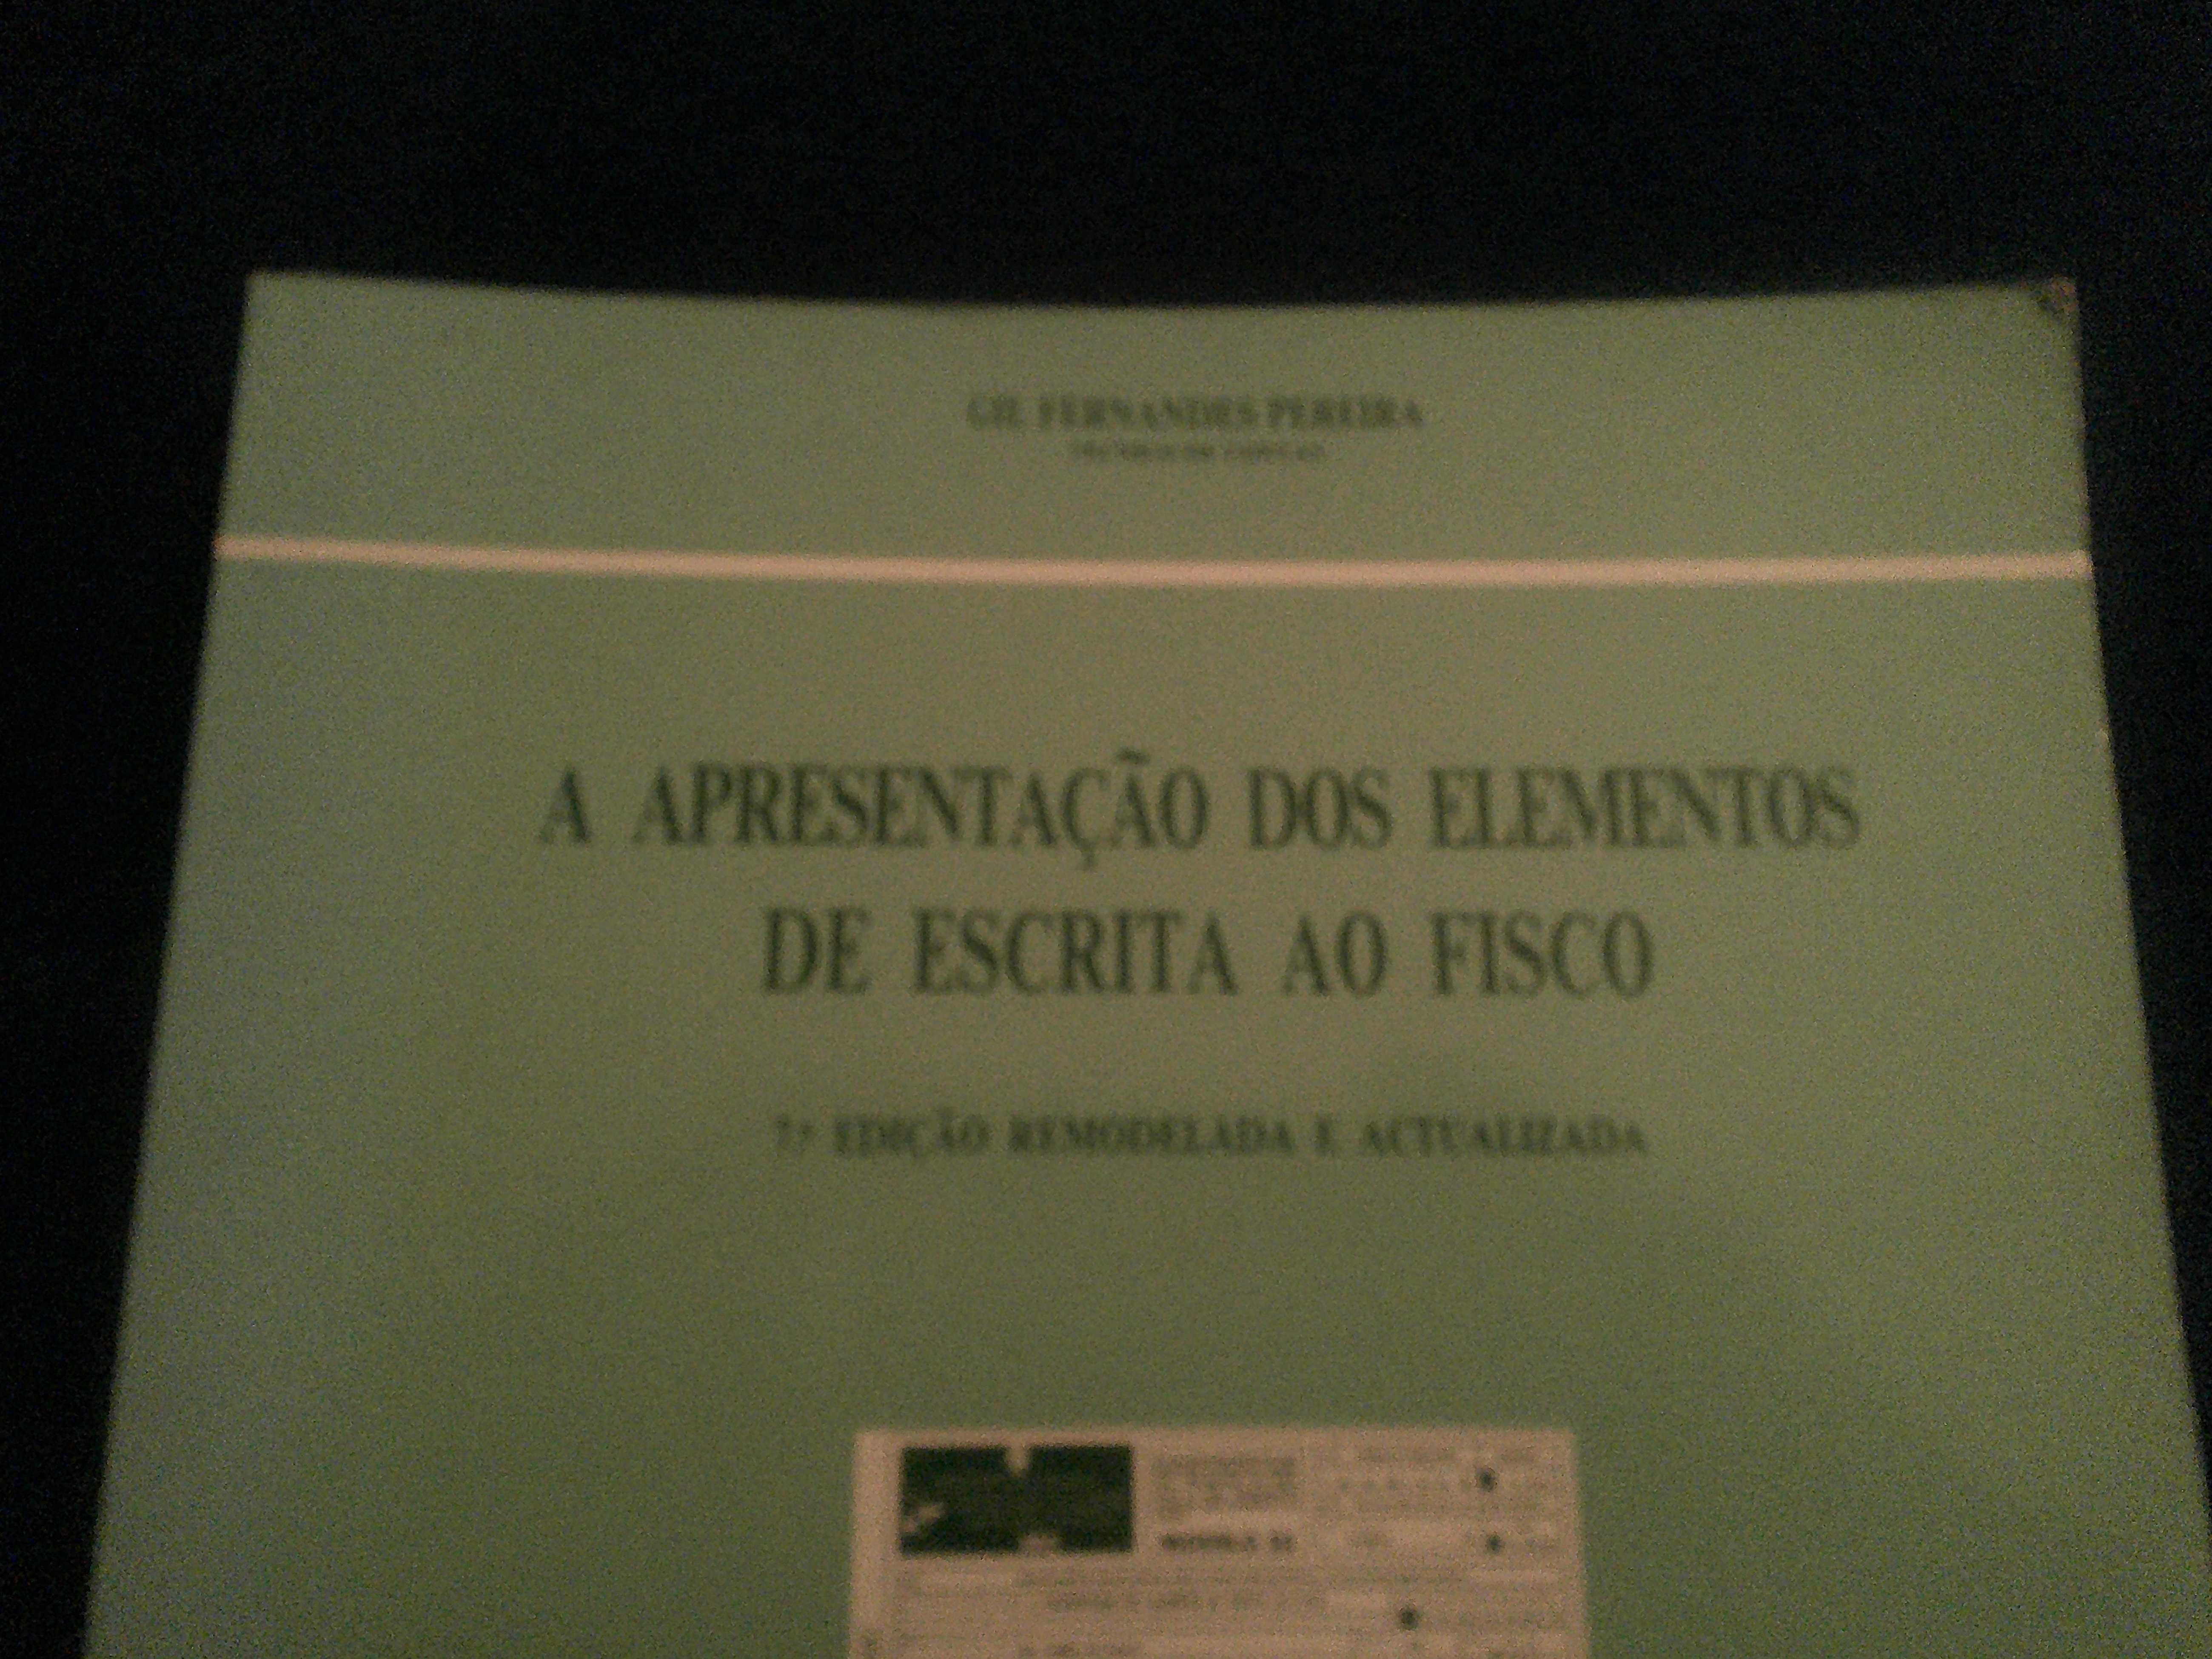 A Apresentação dos Elementos de Escrita ao Fisco - Gil Fernandes